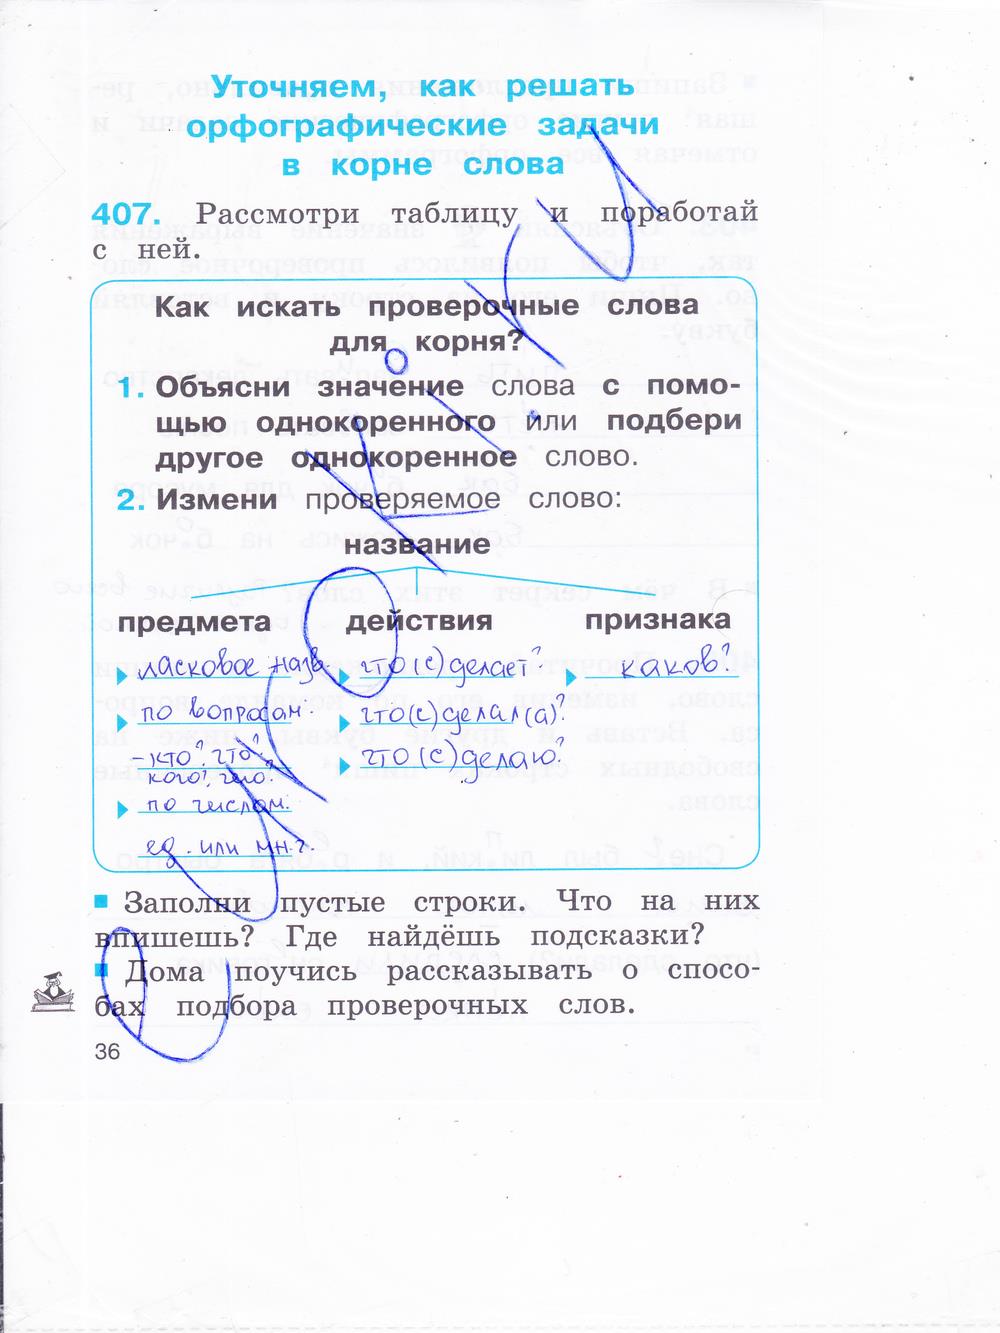 гдз 2 класс рабочая тетрадь часть 2 страница 36 русский язык Соловейчик, Кузьменко